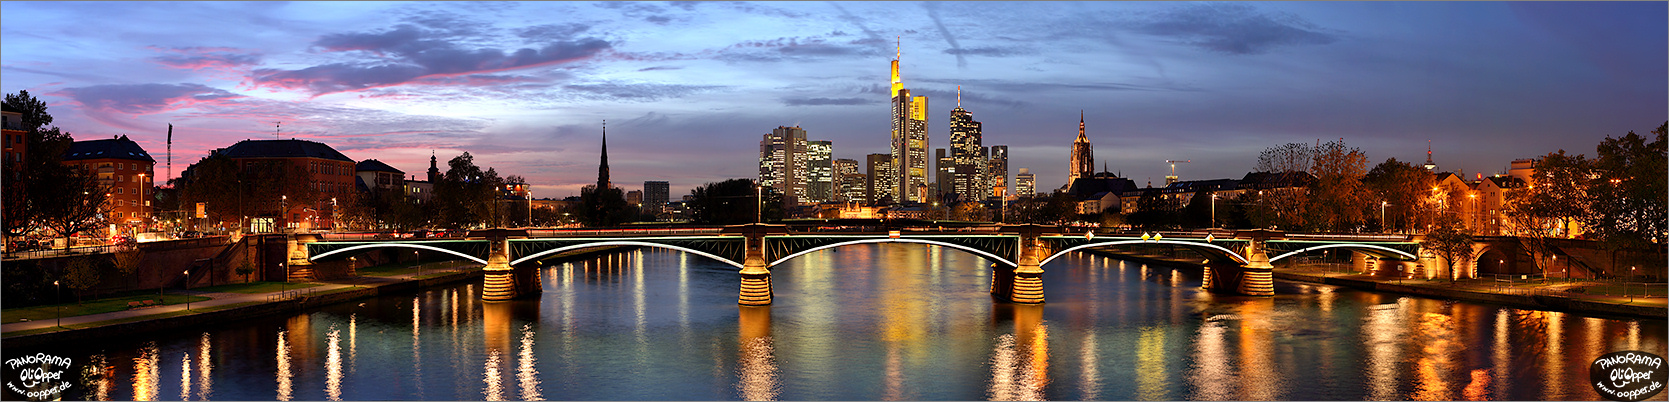 Frankfurt Skyline zur blauen Stunde - p143 - (c) by Oliver Opper